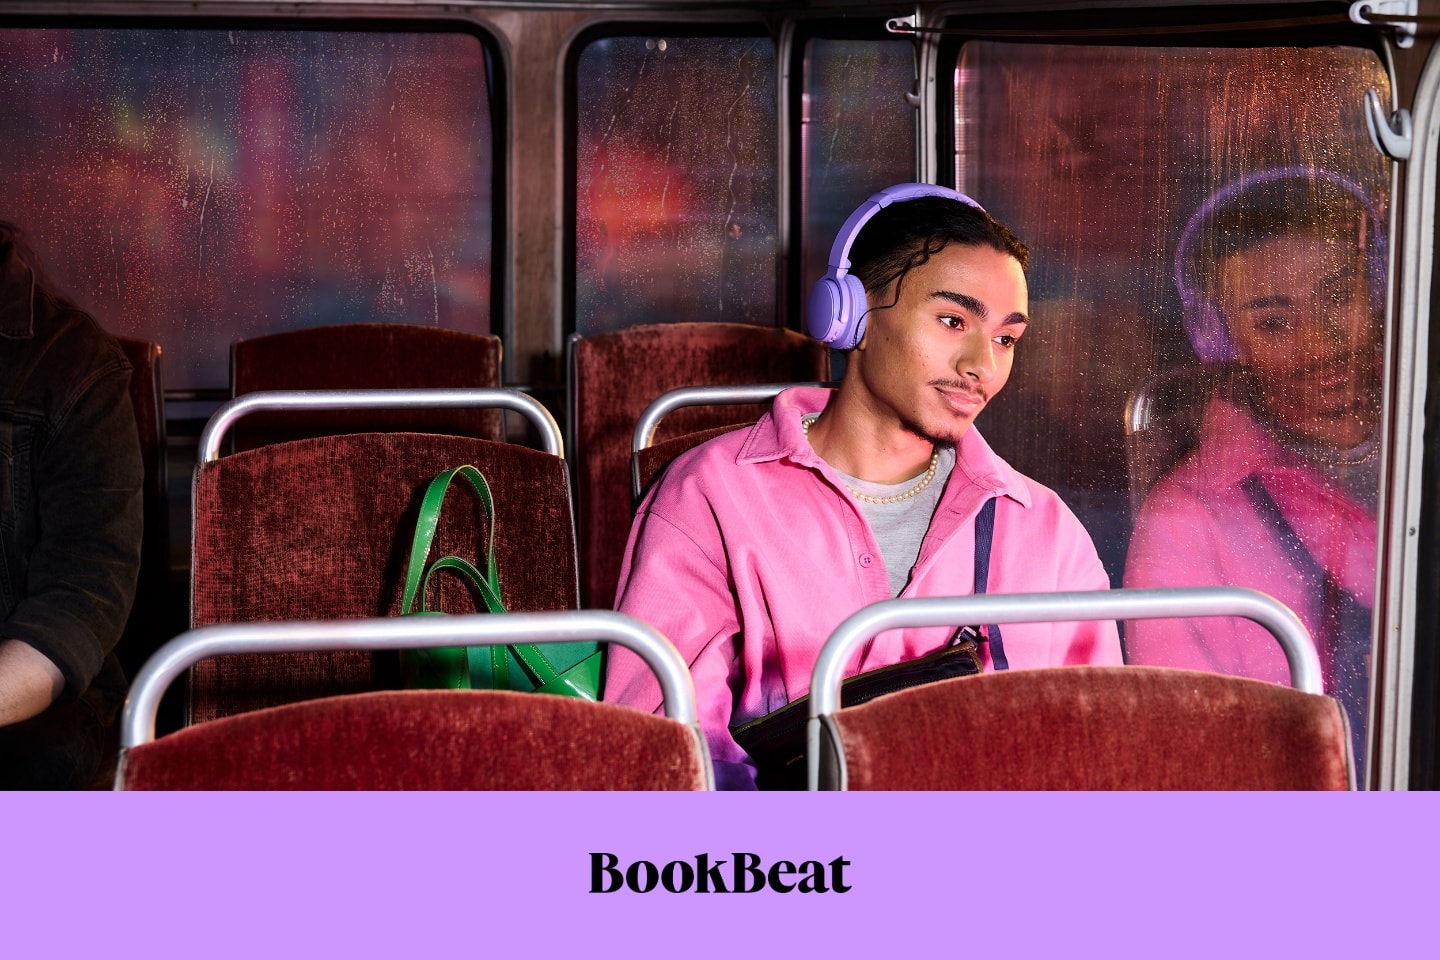 Prova på BookBeat gratis i 50 dagar (1 av 3)